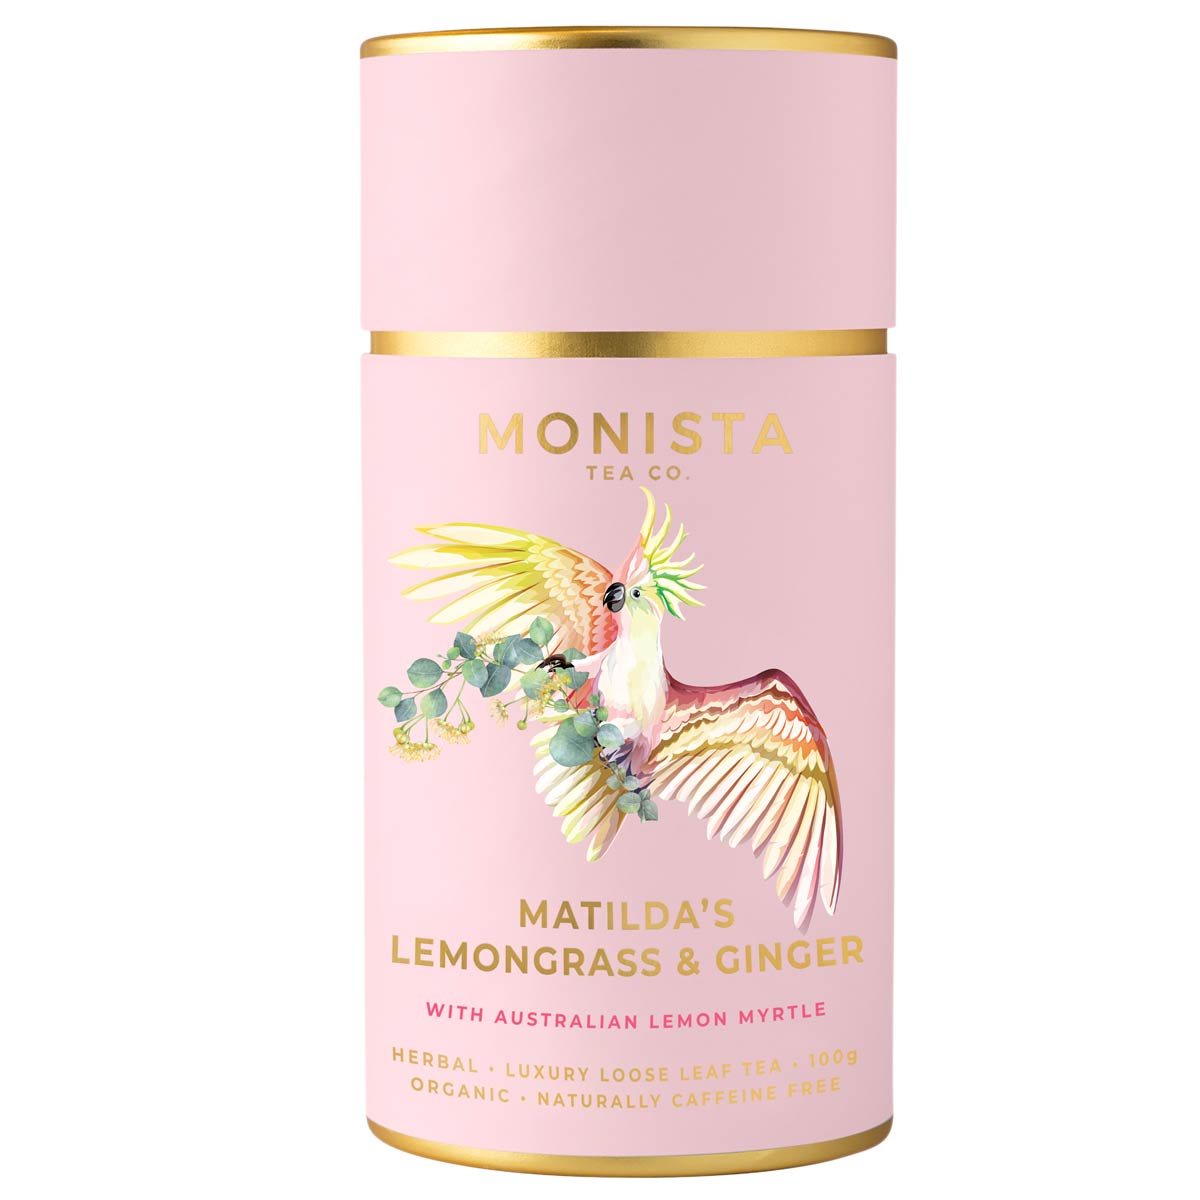 Matilda's Lemongrass & Ginger Tea - The Bloom Room 